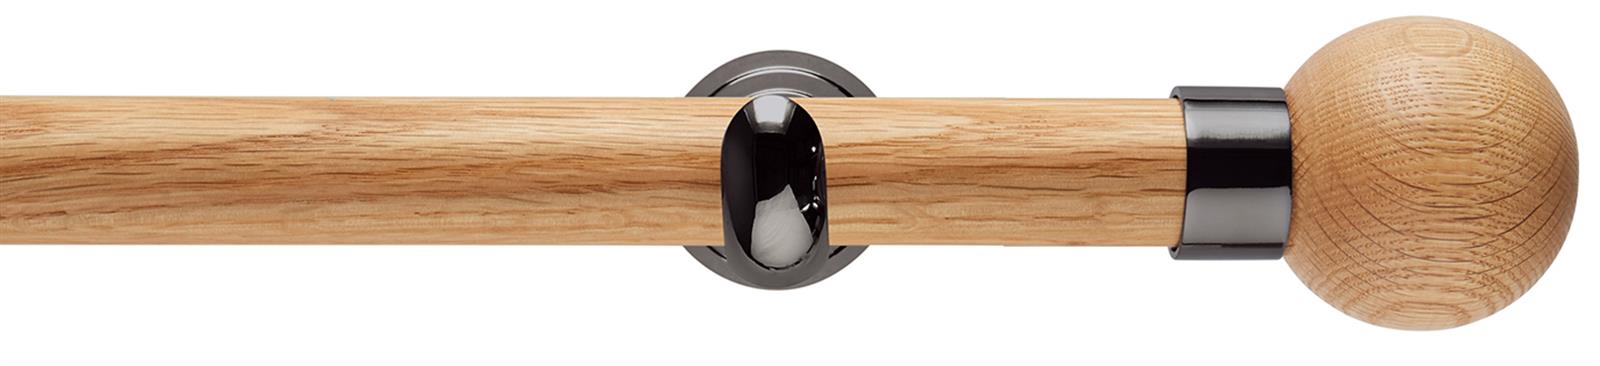 Neo 28mm Oak Wood Eyelet Pole, Black Nickel Cup, Oak Ball